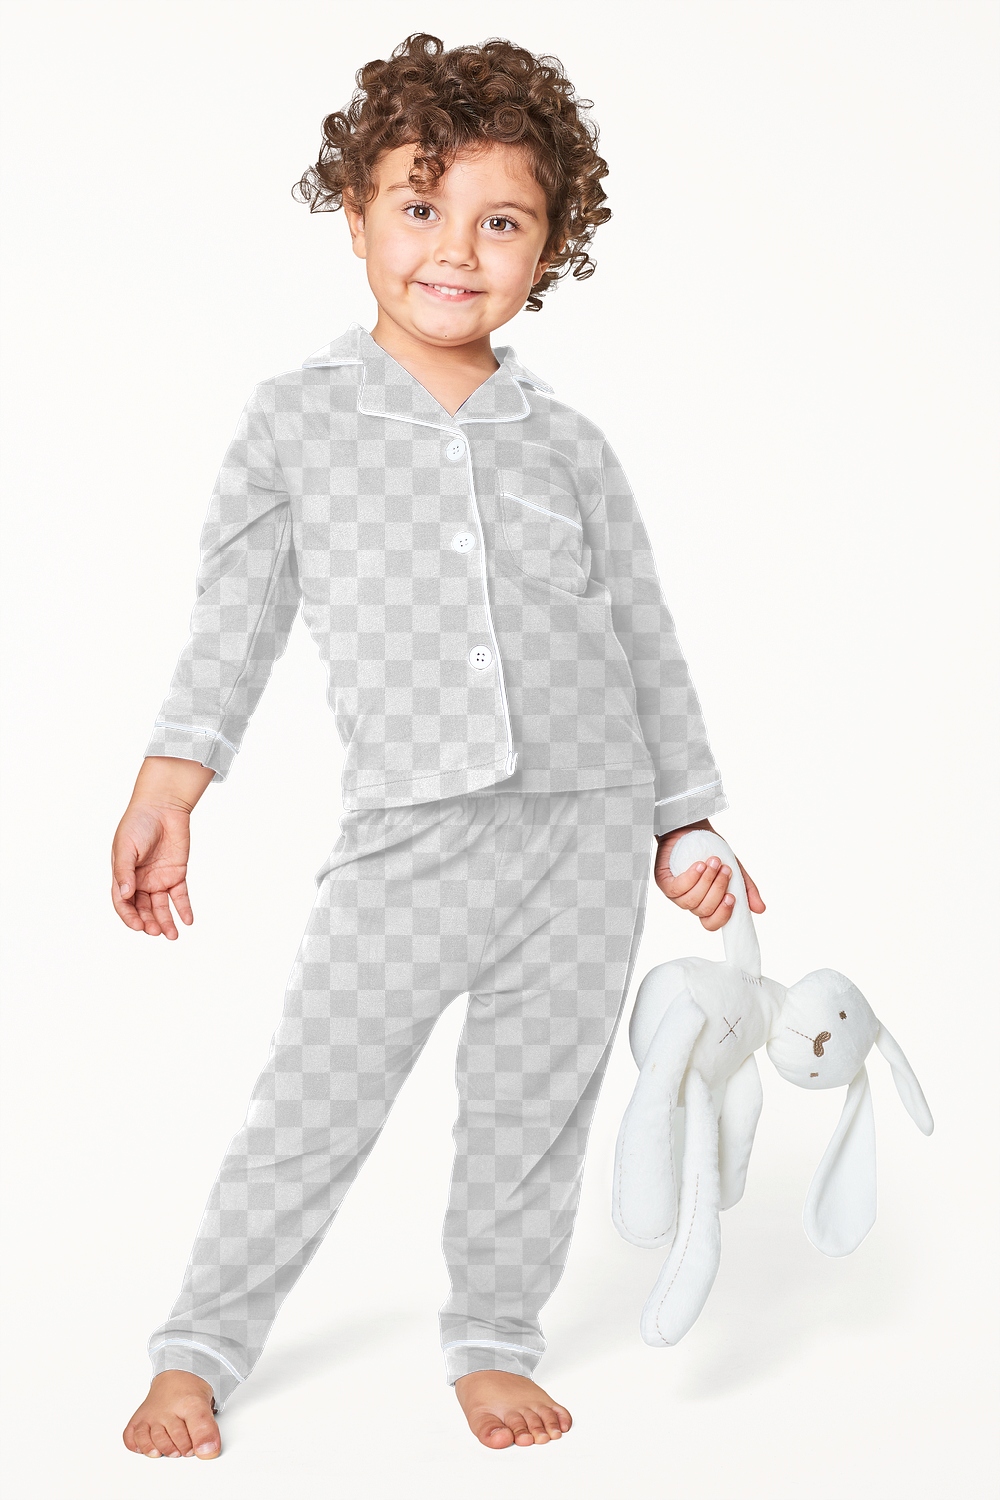 Kid's pajamas mockup png in studio | Premium PNG - rawpixel